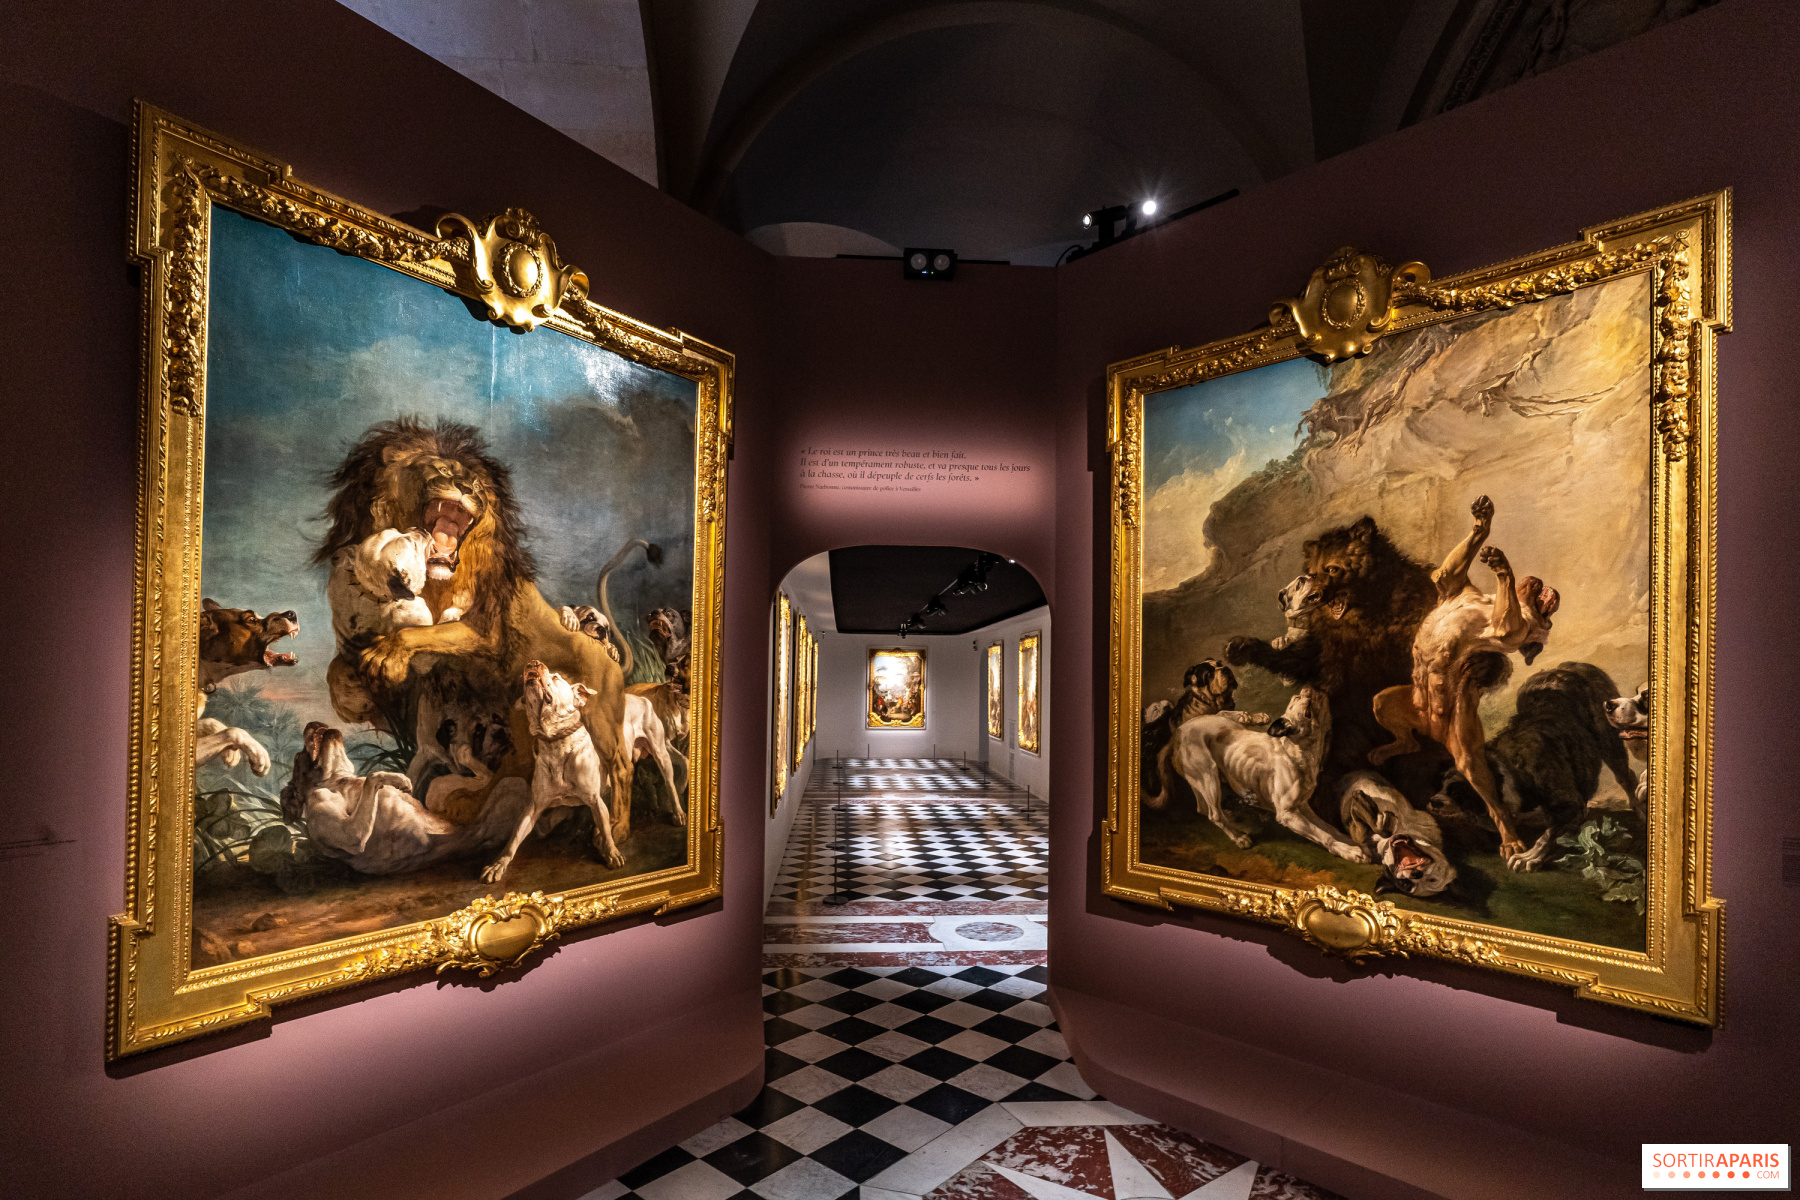 Exposition " Louis XV, passions d'un roi ", Versailles, 2022 - Page 2 805058-exposition-louis-xv-au-chateau-de-versailles-le-roi-chasseur-lion-d-afrique-ours-de-pologne-jean-jacques-bachelier